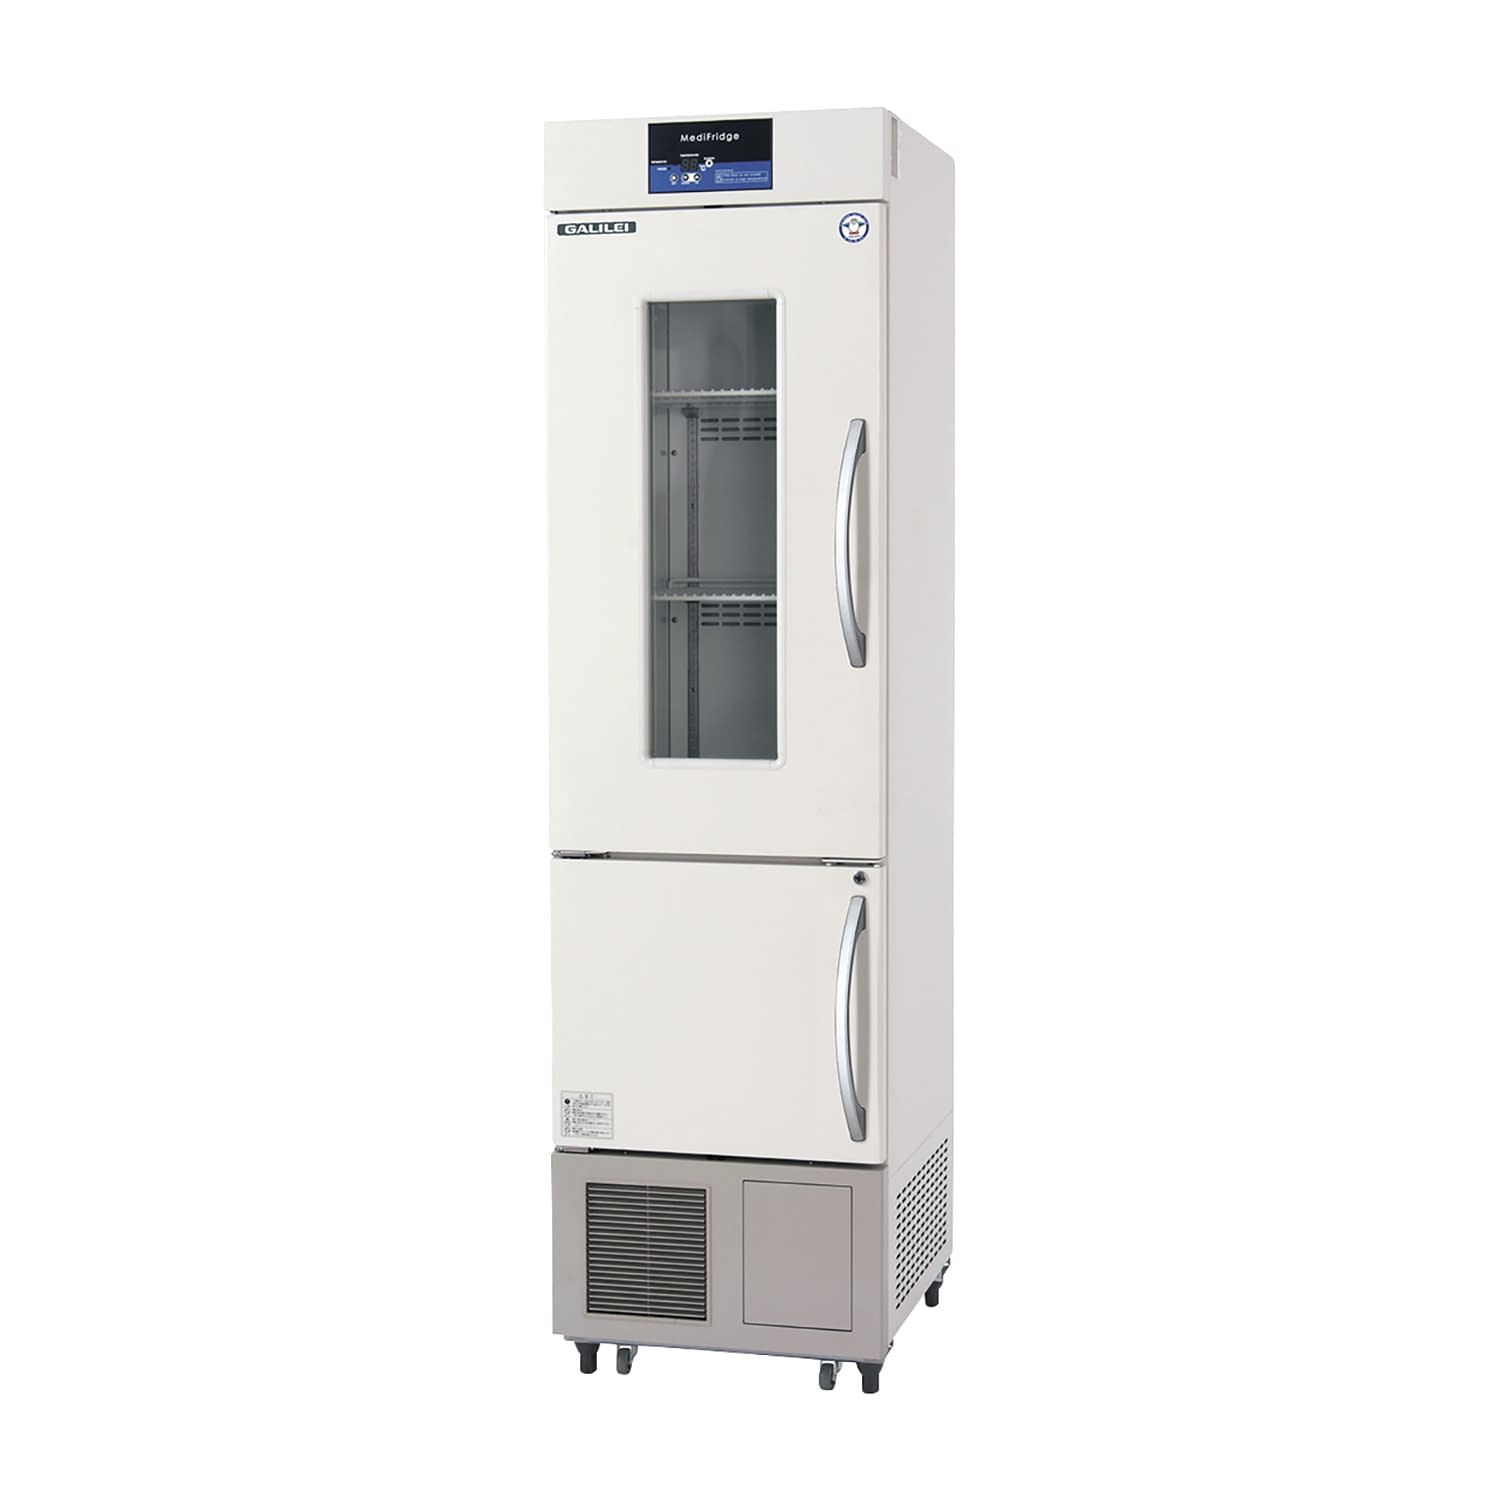 薬用冷凍冷蔵庫 FMS-F155GSX(62／174L) 1台 フクシマガリレイ アイボリー(標準色) カラーブラウン25-5515-0002 保冷庫 検査室 薬用保冷庫